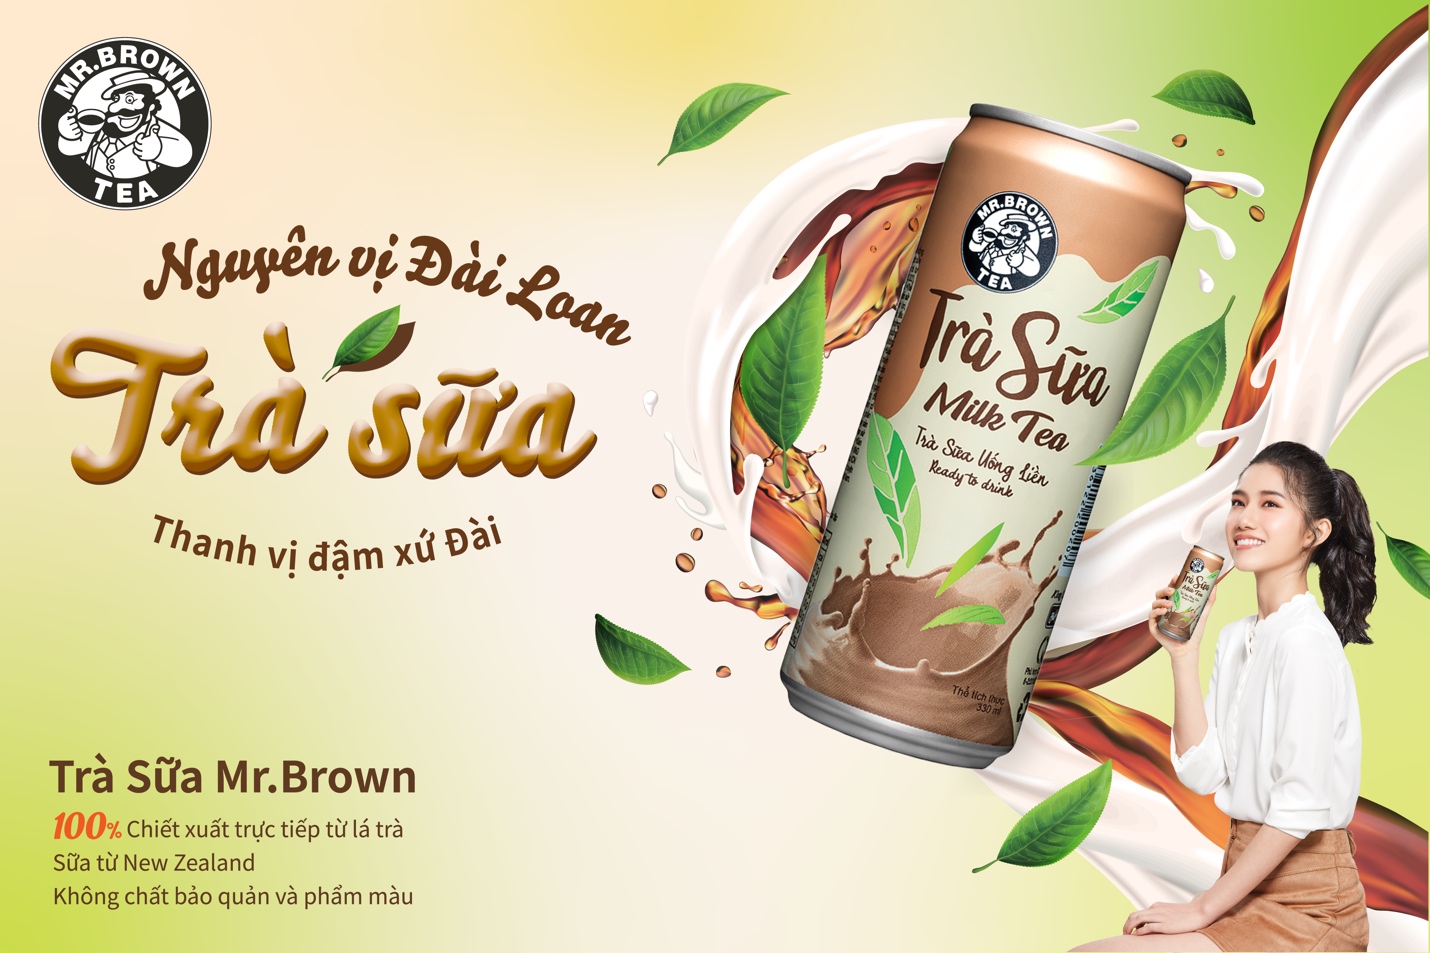 Trà sữa đóng lon Mr. Brown chinh phục giới trẻ bởi hương vị “chuẩn” Đài Loan.